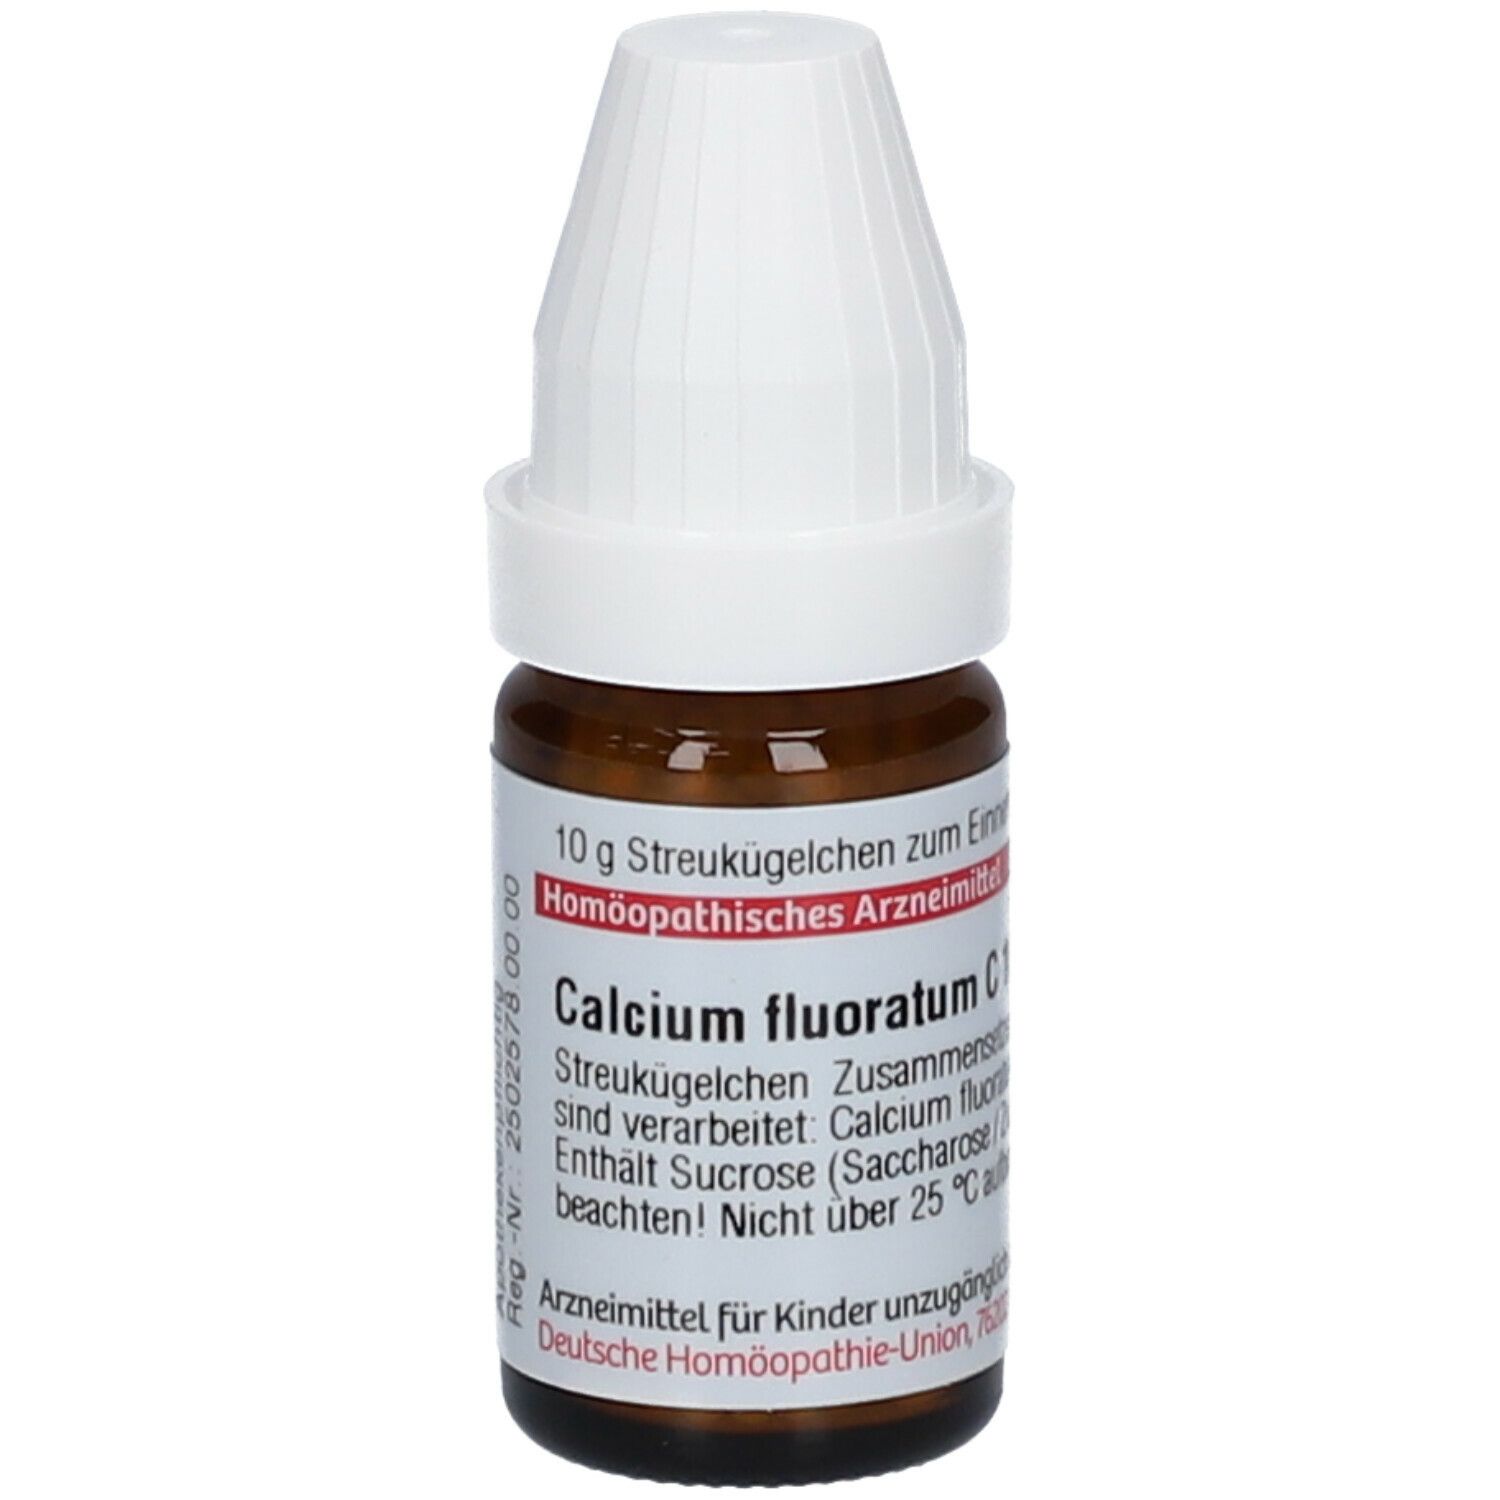 DHU Calcium Fluoratum C1000